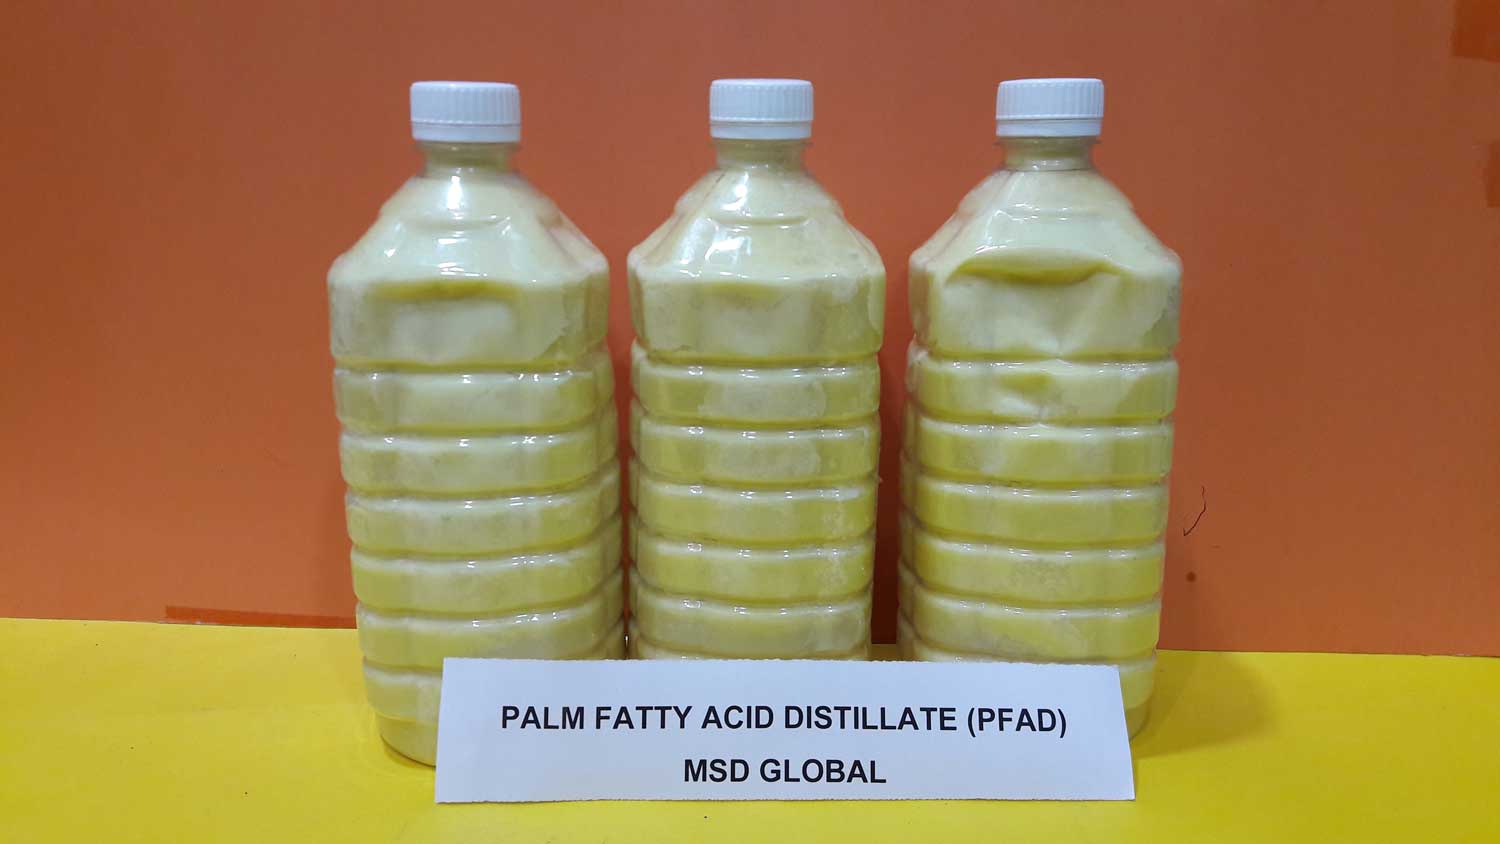 PALM FATTY ACID DISTILLATE